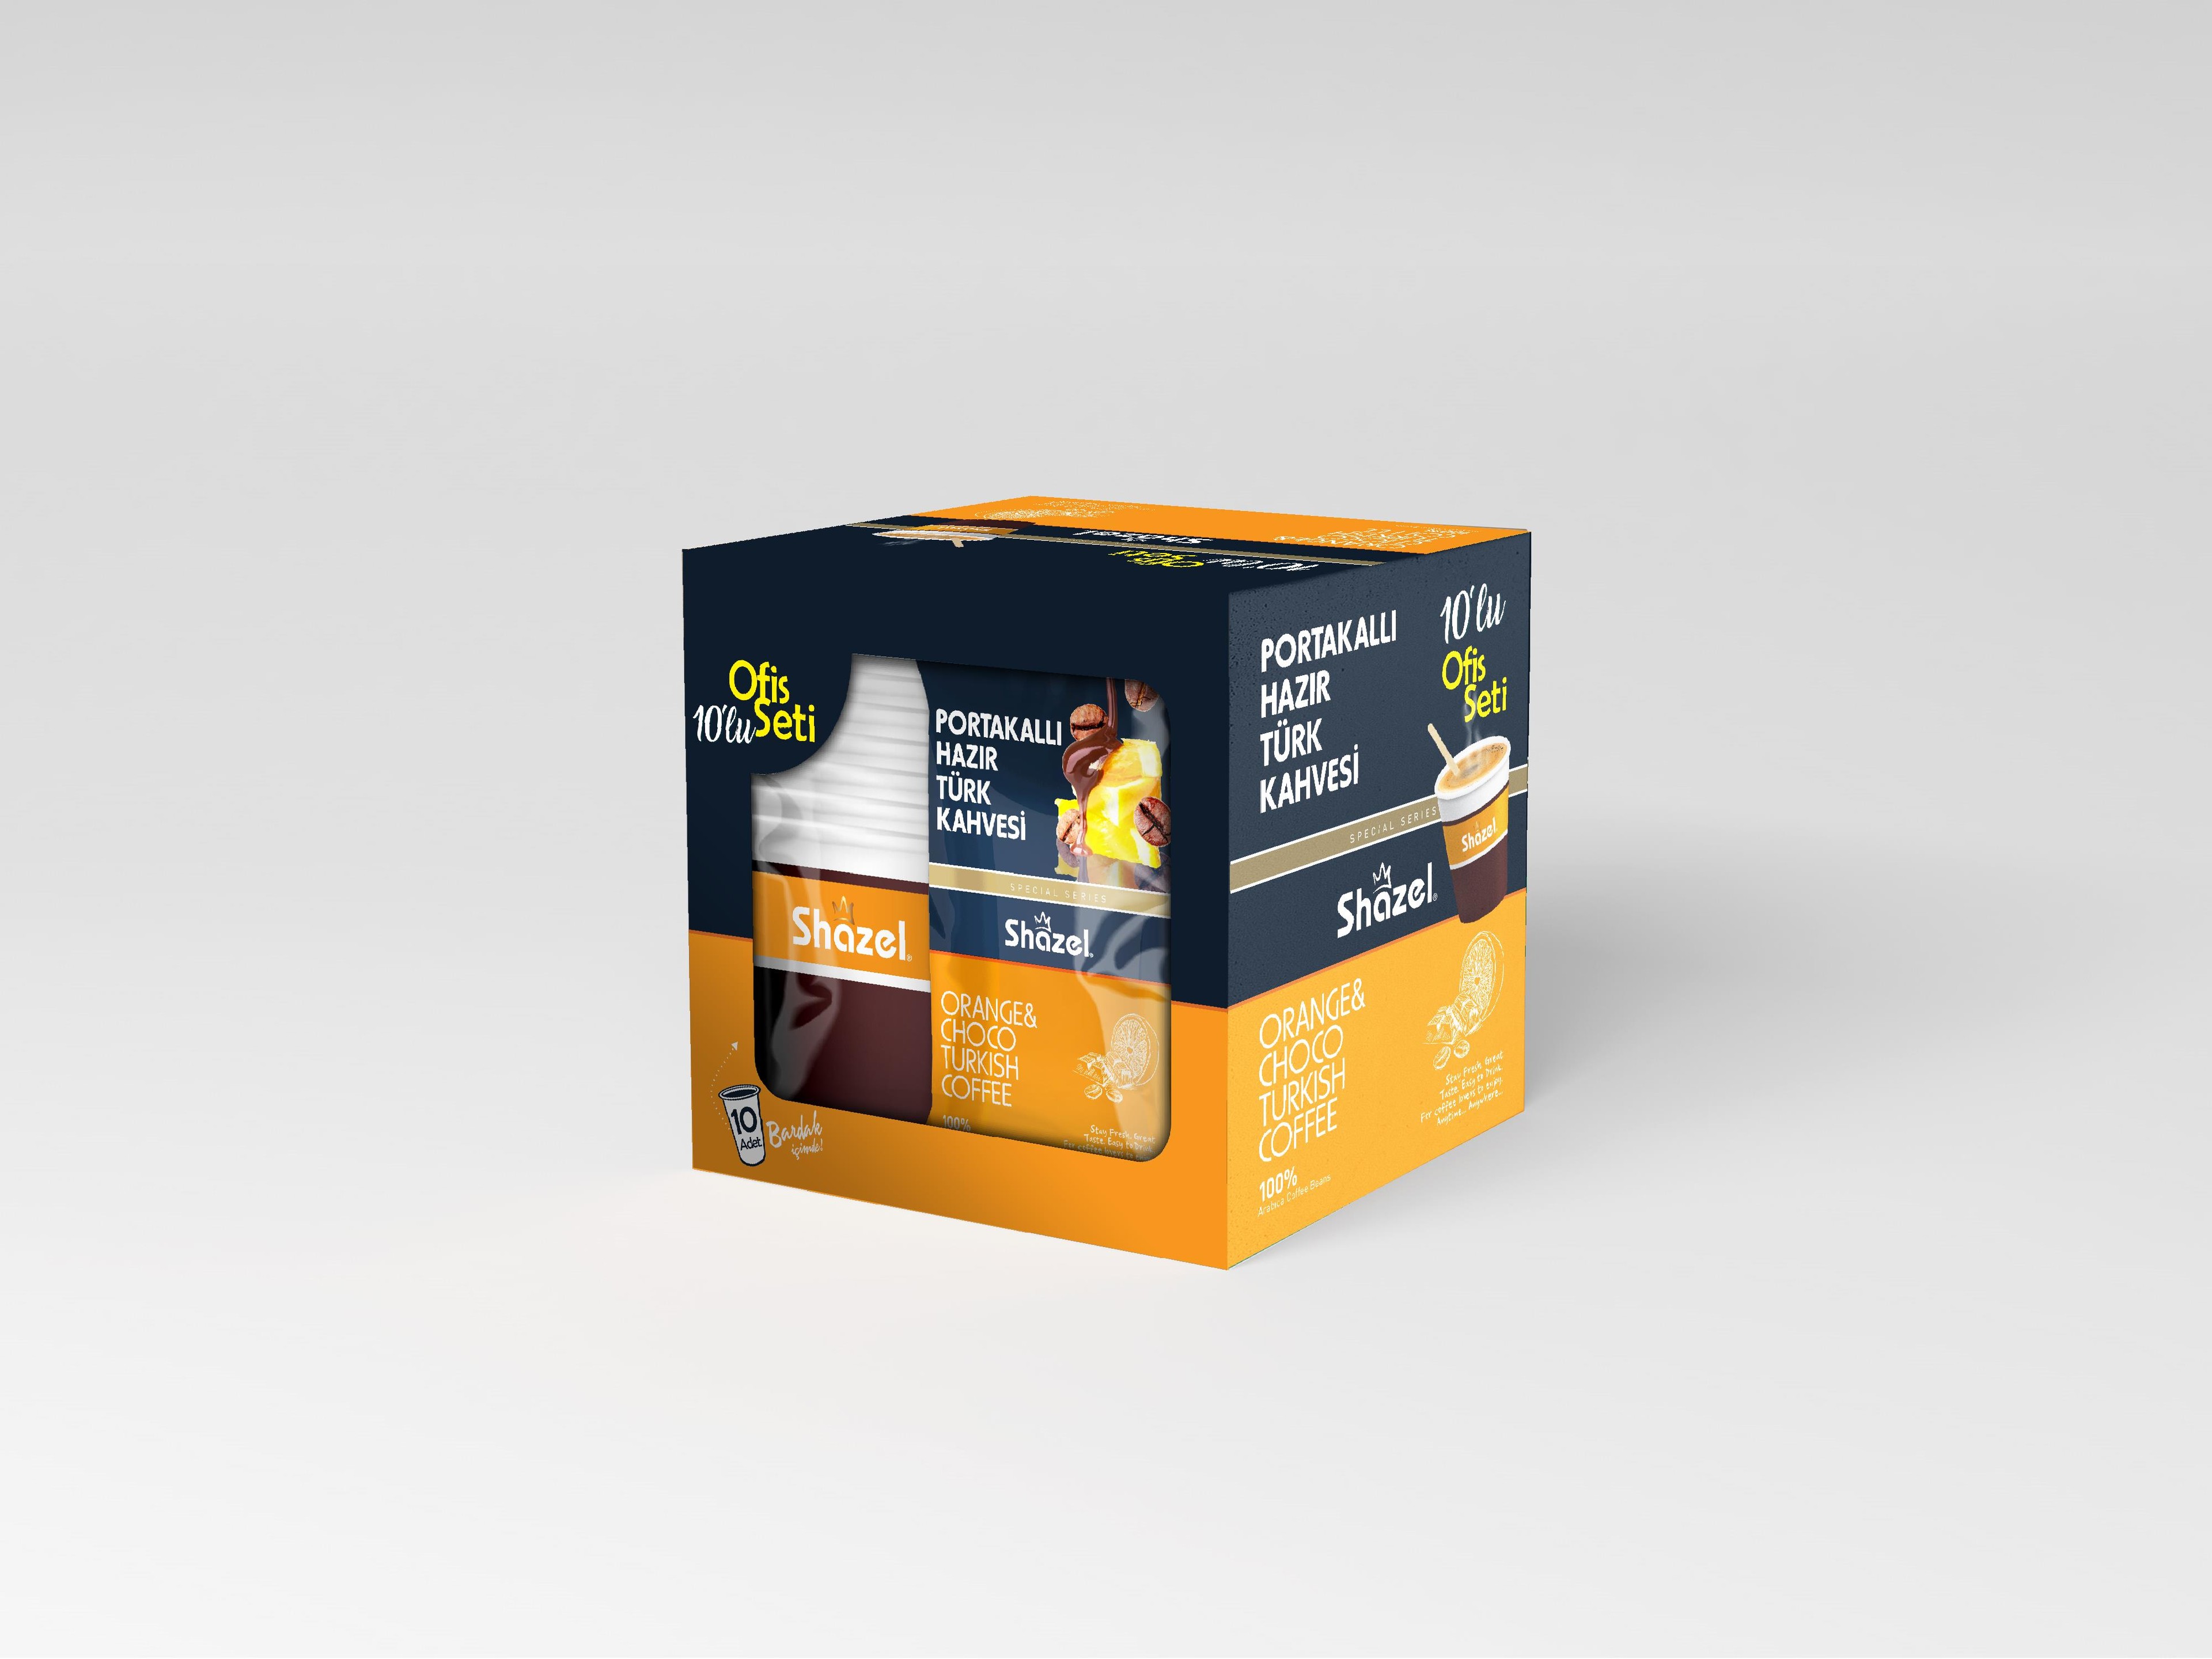 Shazel Orange & Choco Instant Turkish Coffee – Office Set 12g x 10 Pieces x 12 Box x 1 Carton